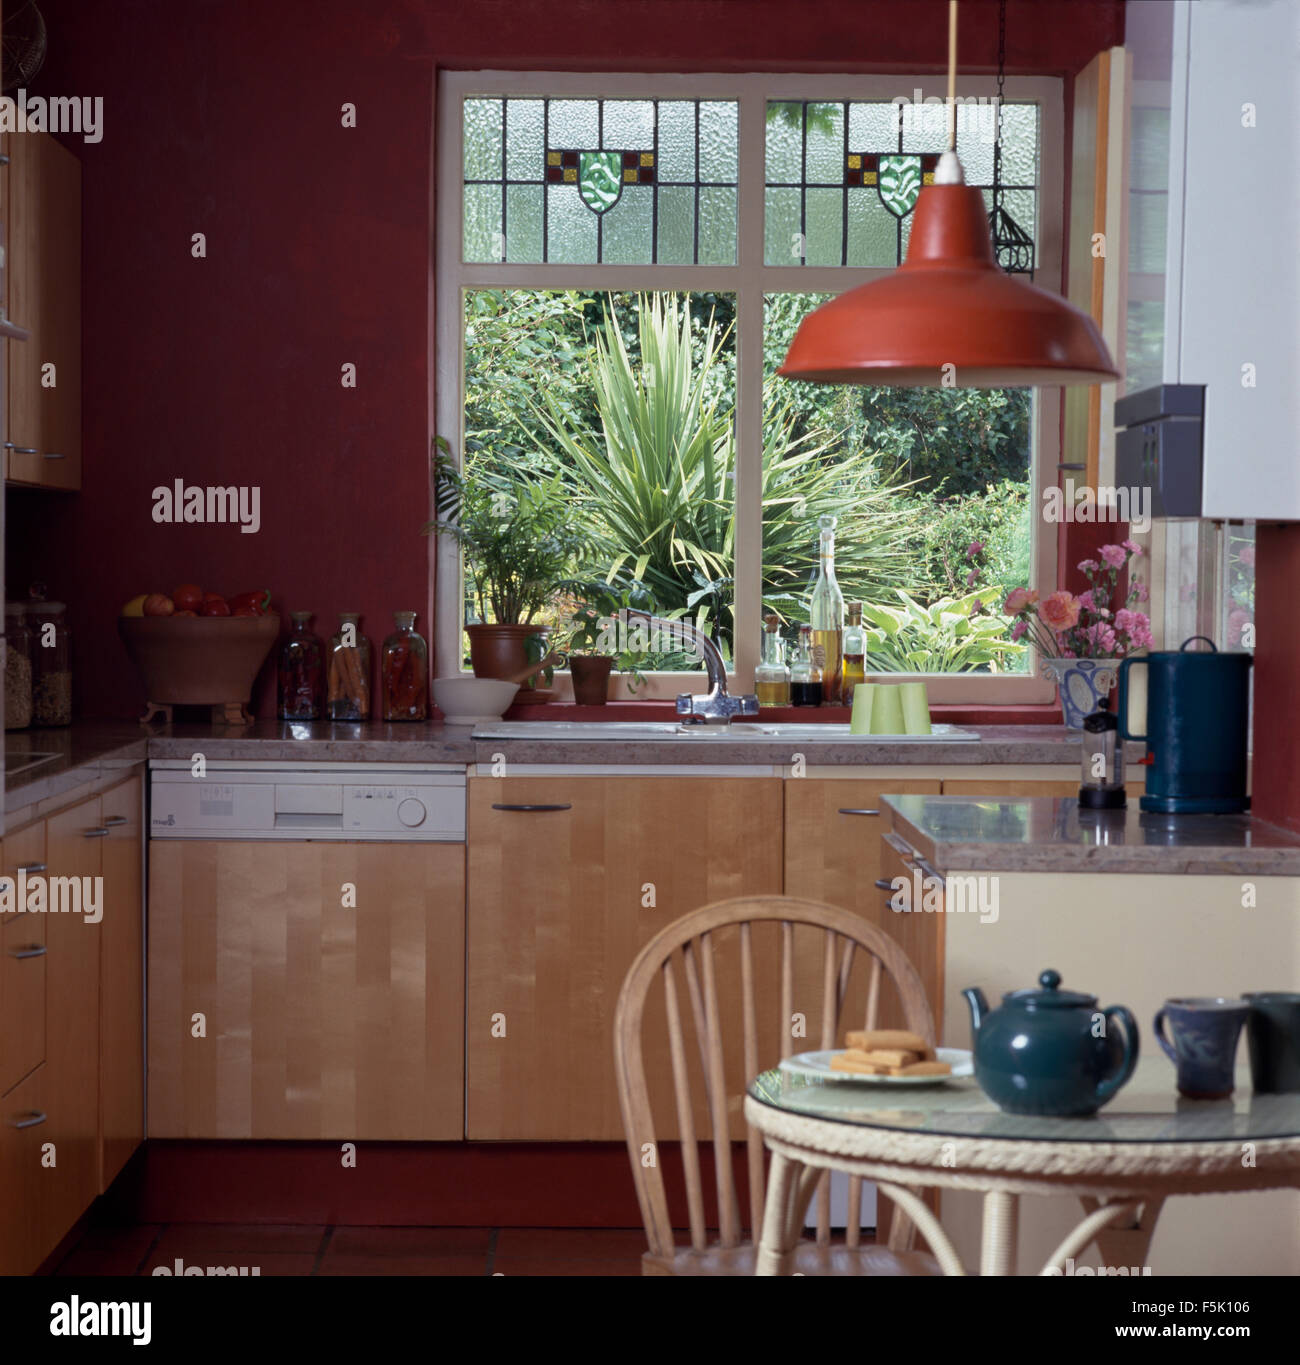 Stained Glass Panels im Fenster über der Spüle und Geschirrspüler in der Küche mit roten Emaille Gewicht der Leuchte Stockfoto